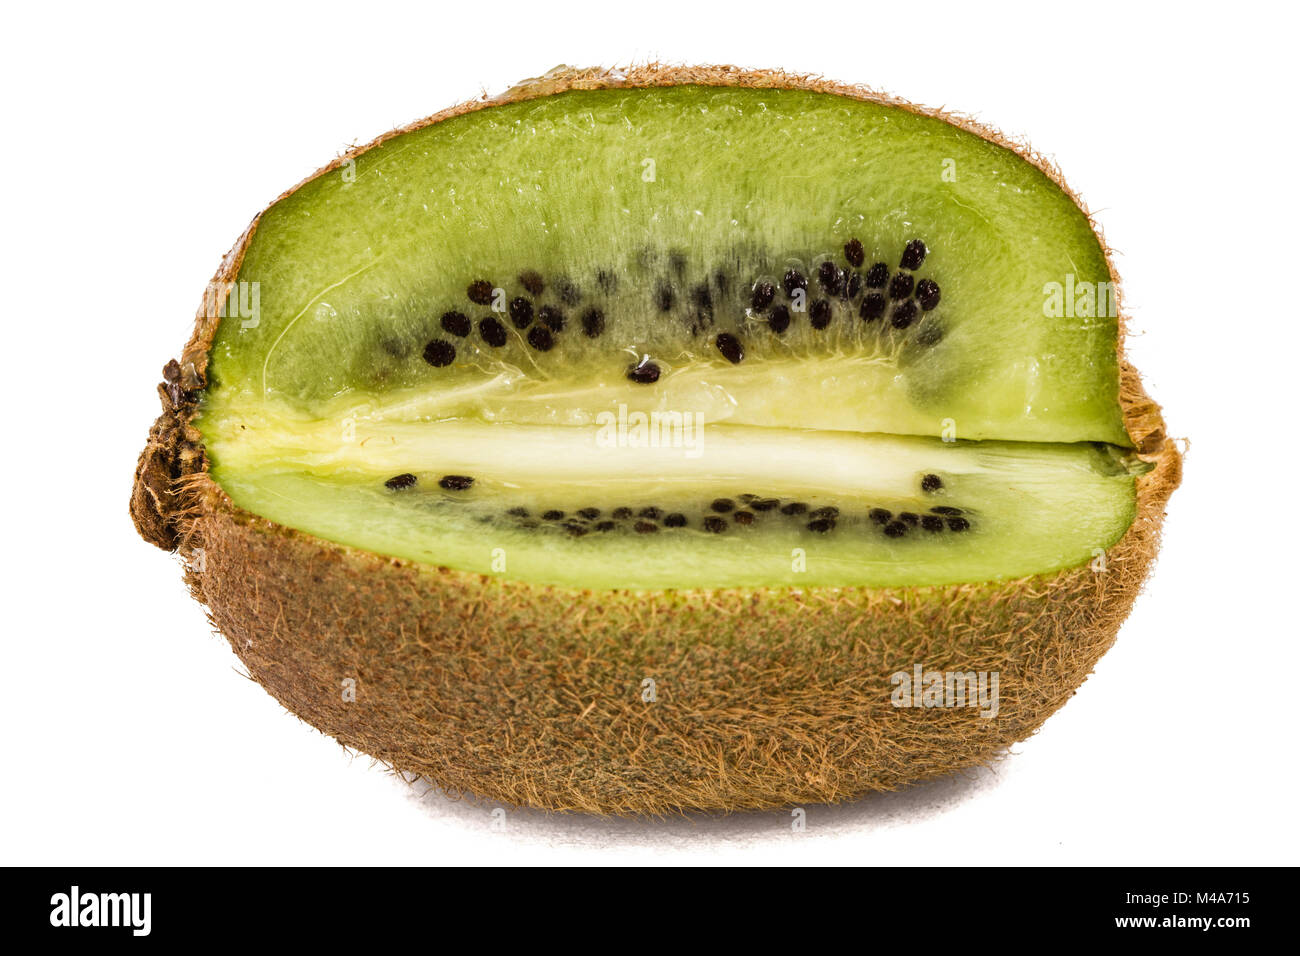 Juicy kiwi fruit, isolated on white background Stock Photo